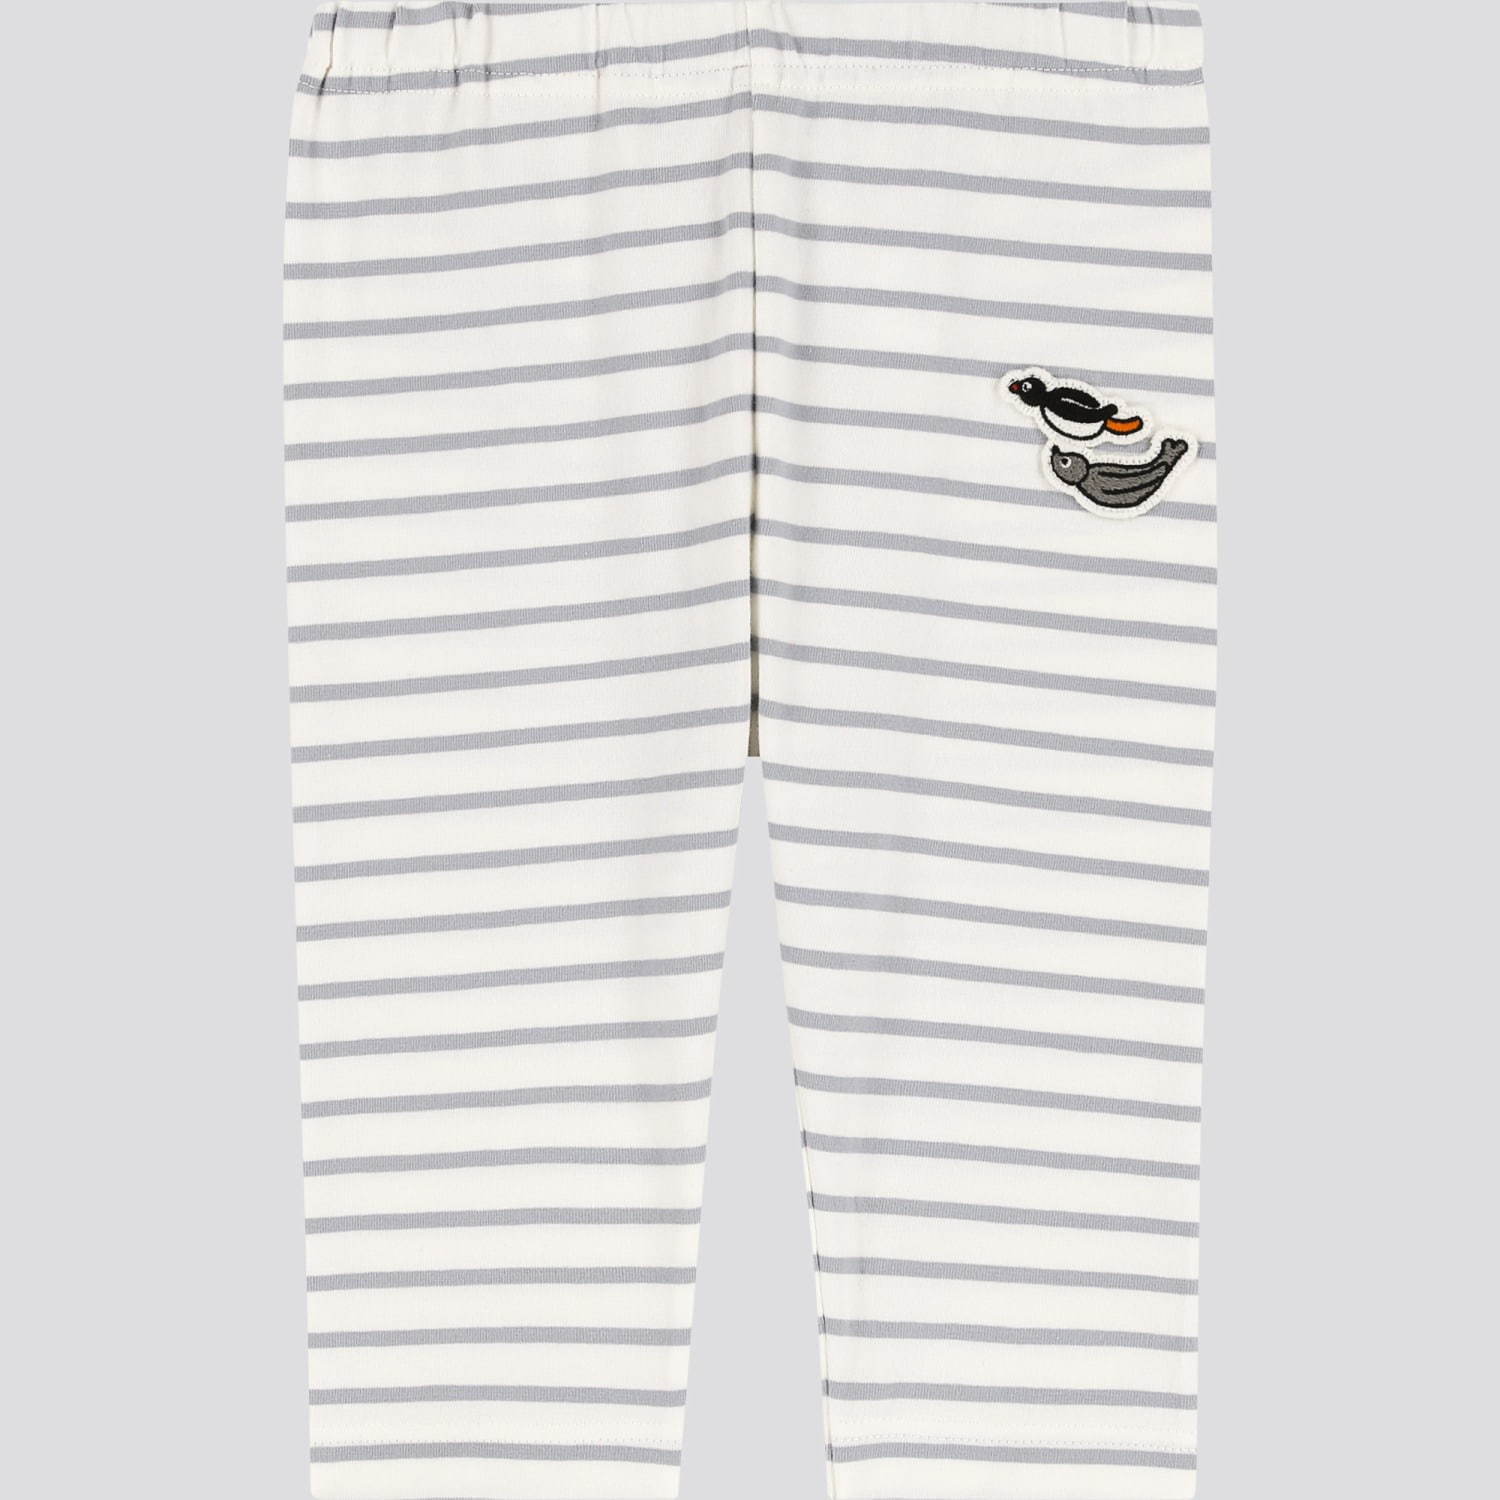 ユニクロut ピングー のベビーパジャマ レギンス ドット柄やボーダー柄 ファッションプレス